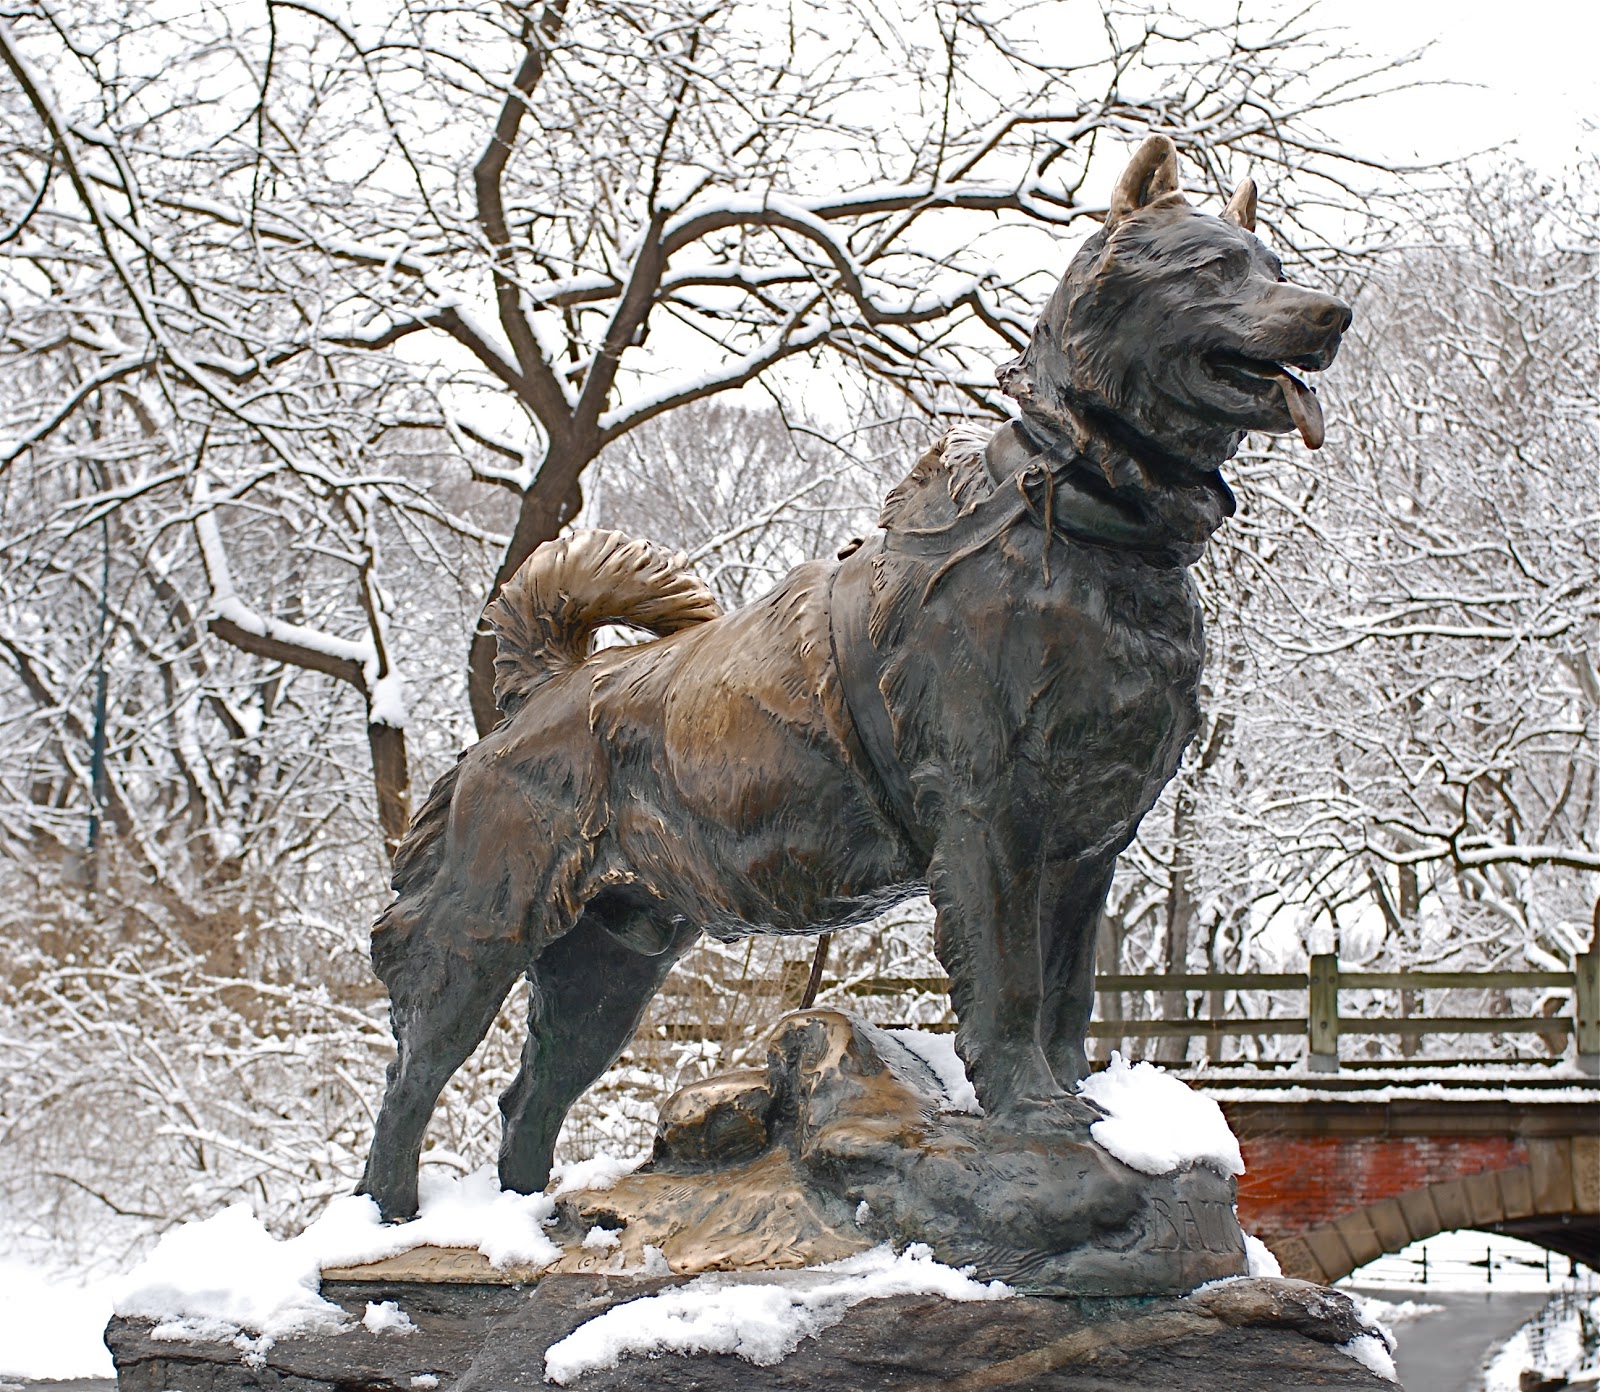 A linda estátua em homenagem ao Huskie Siberiano no Central Park, em Nova York